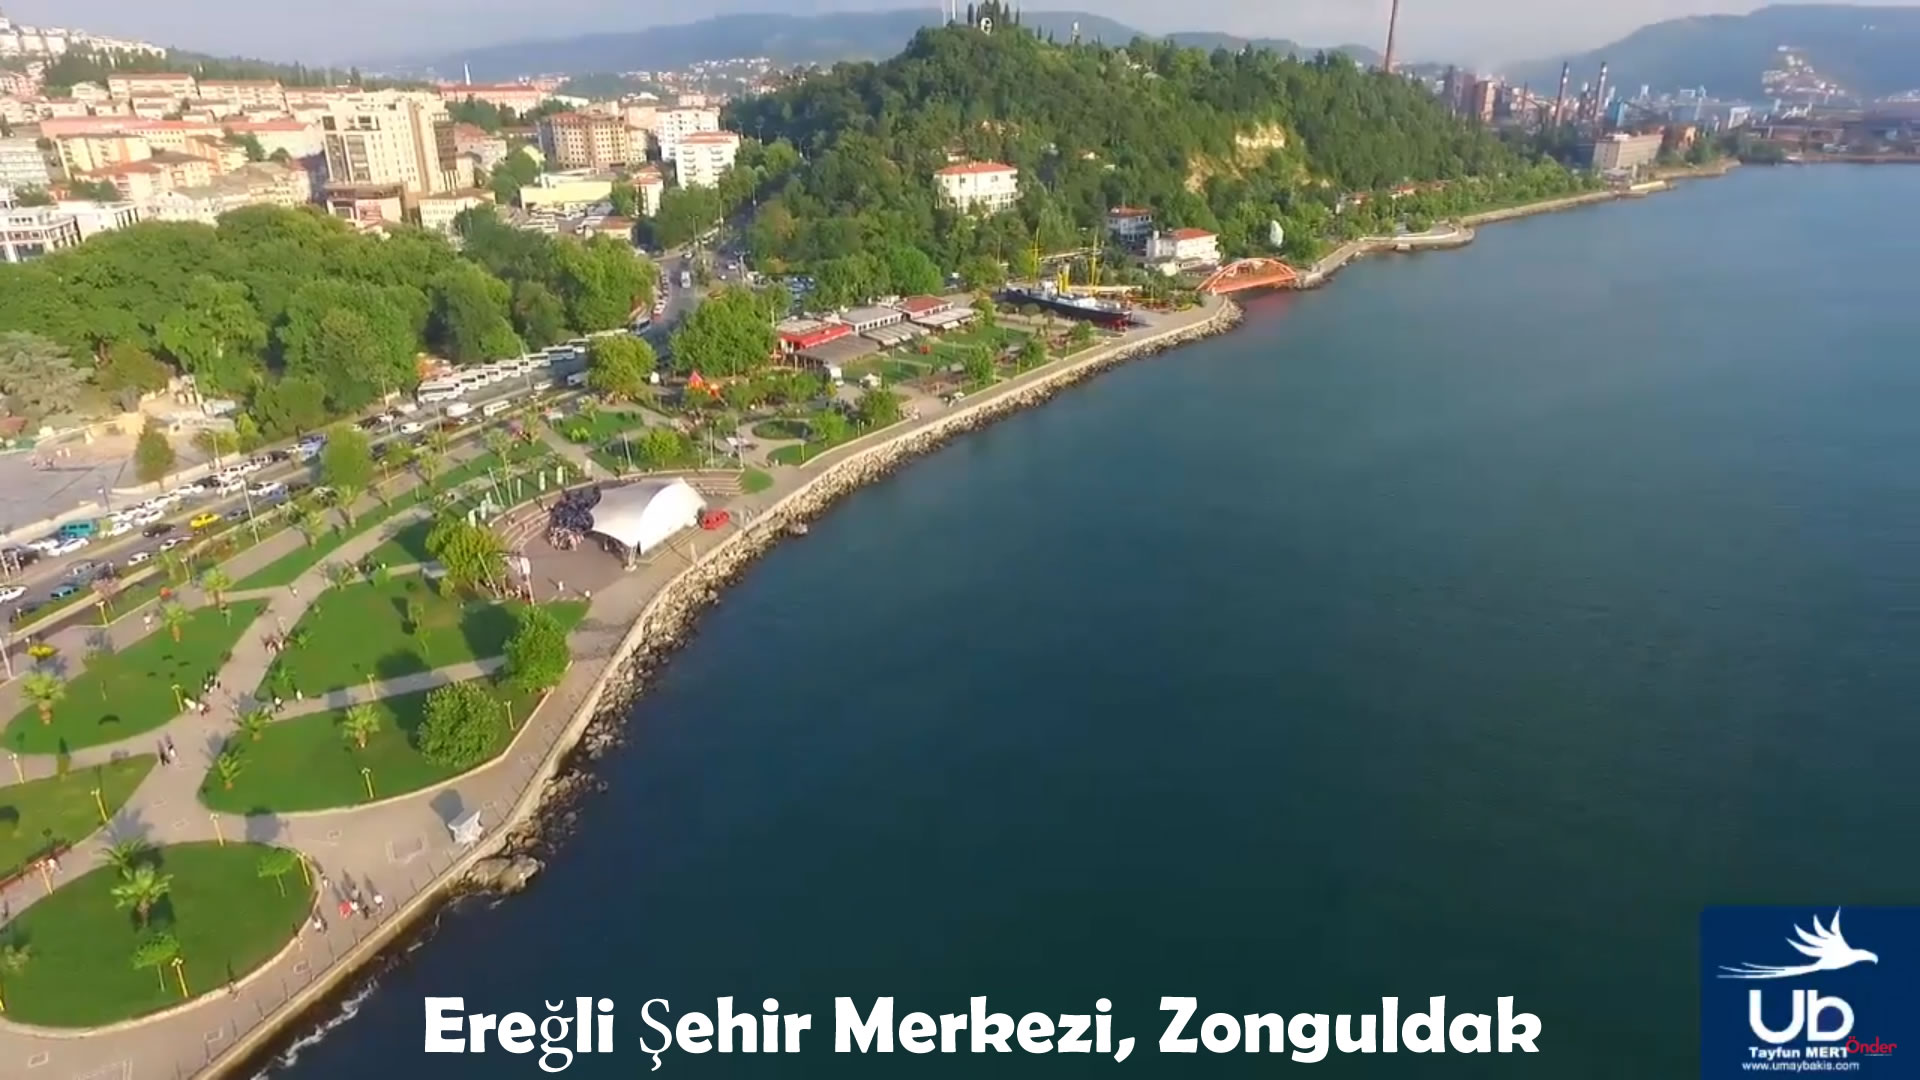 Eregli Iron and Steel, Zonguldak